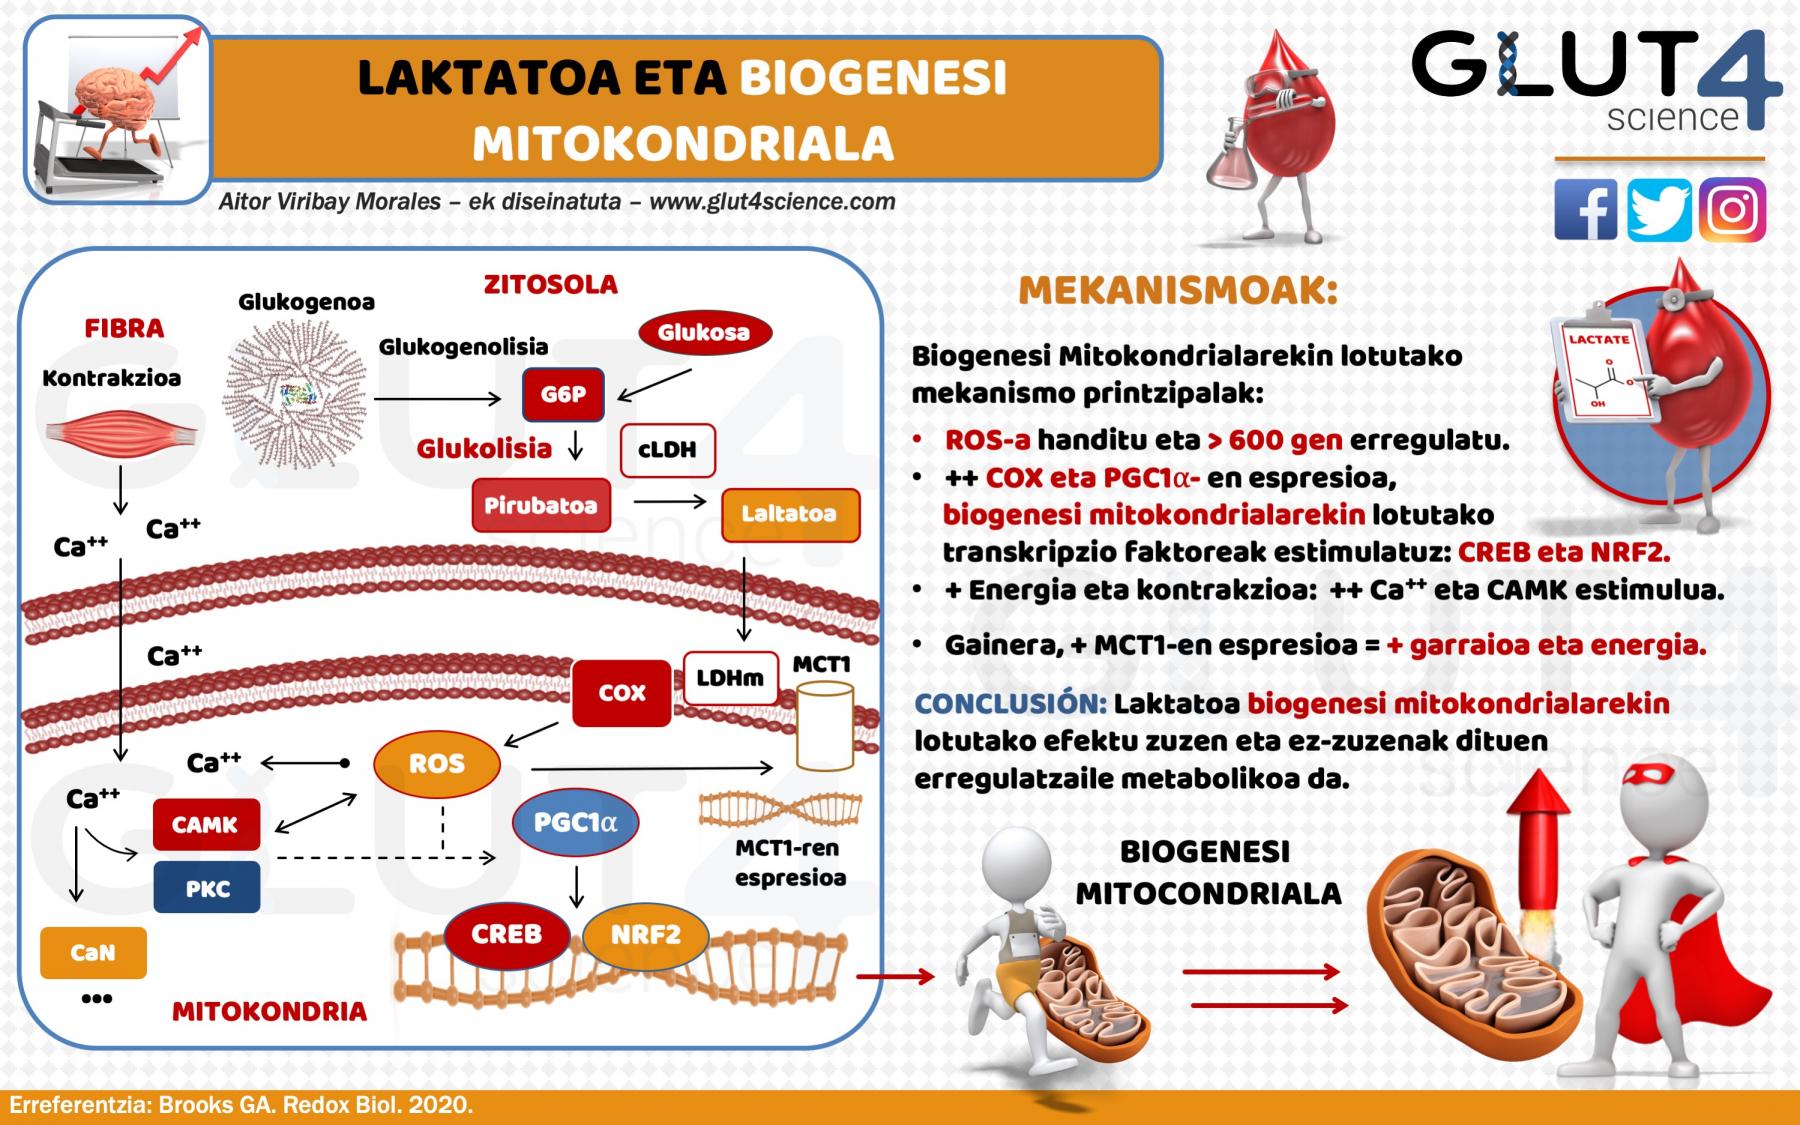 Laktatoa eta Biogenesi Mitokondriala